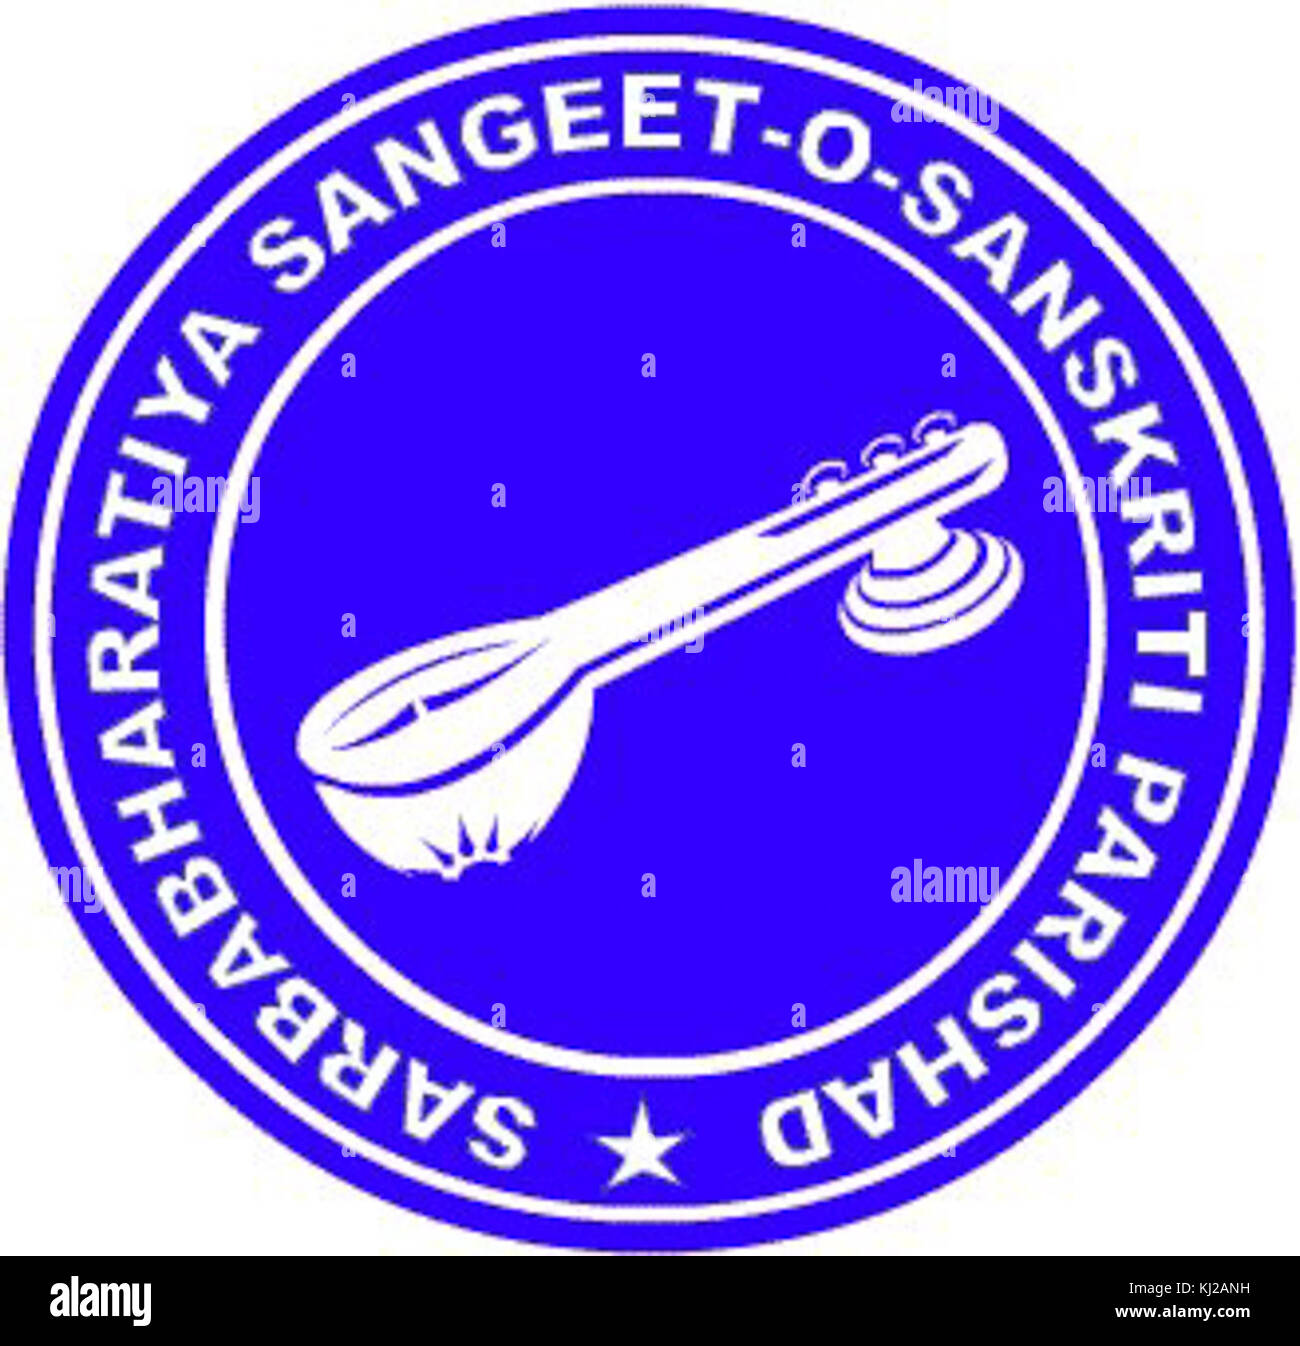 Eingetragene LOGO der Sarbabharatiya Sangeet-O-sanskriti Parishad Stockfoto